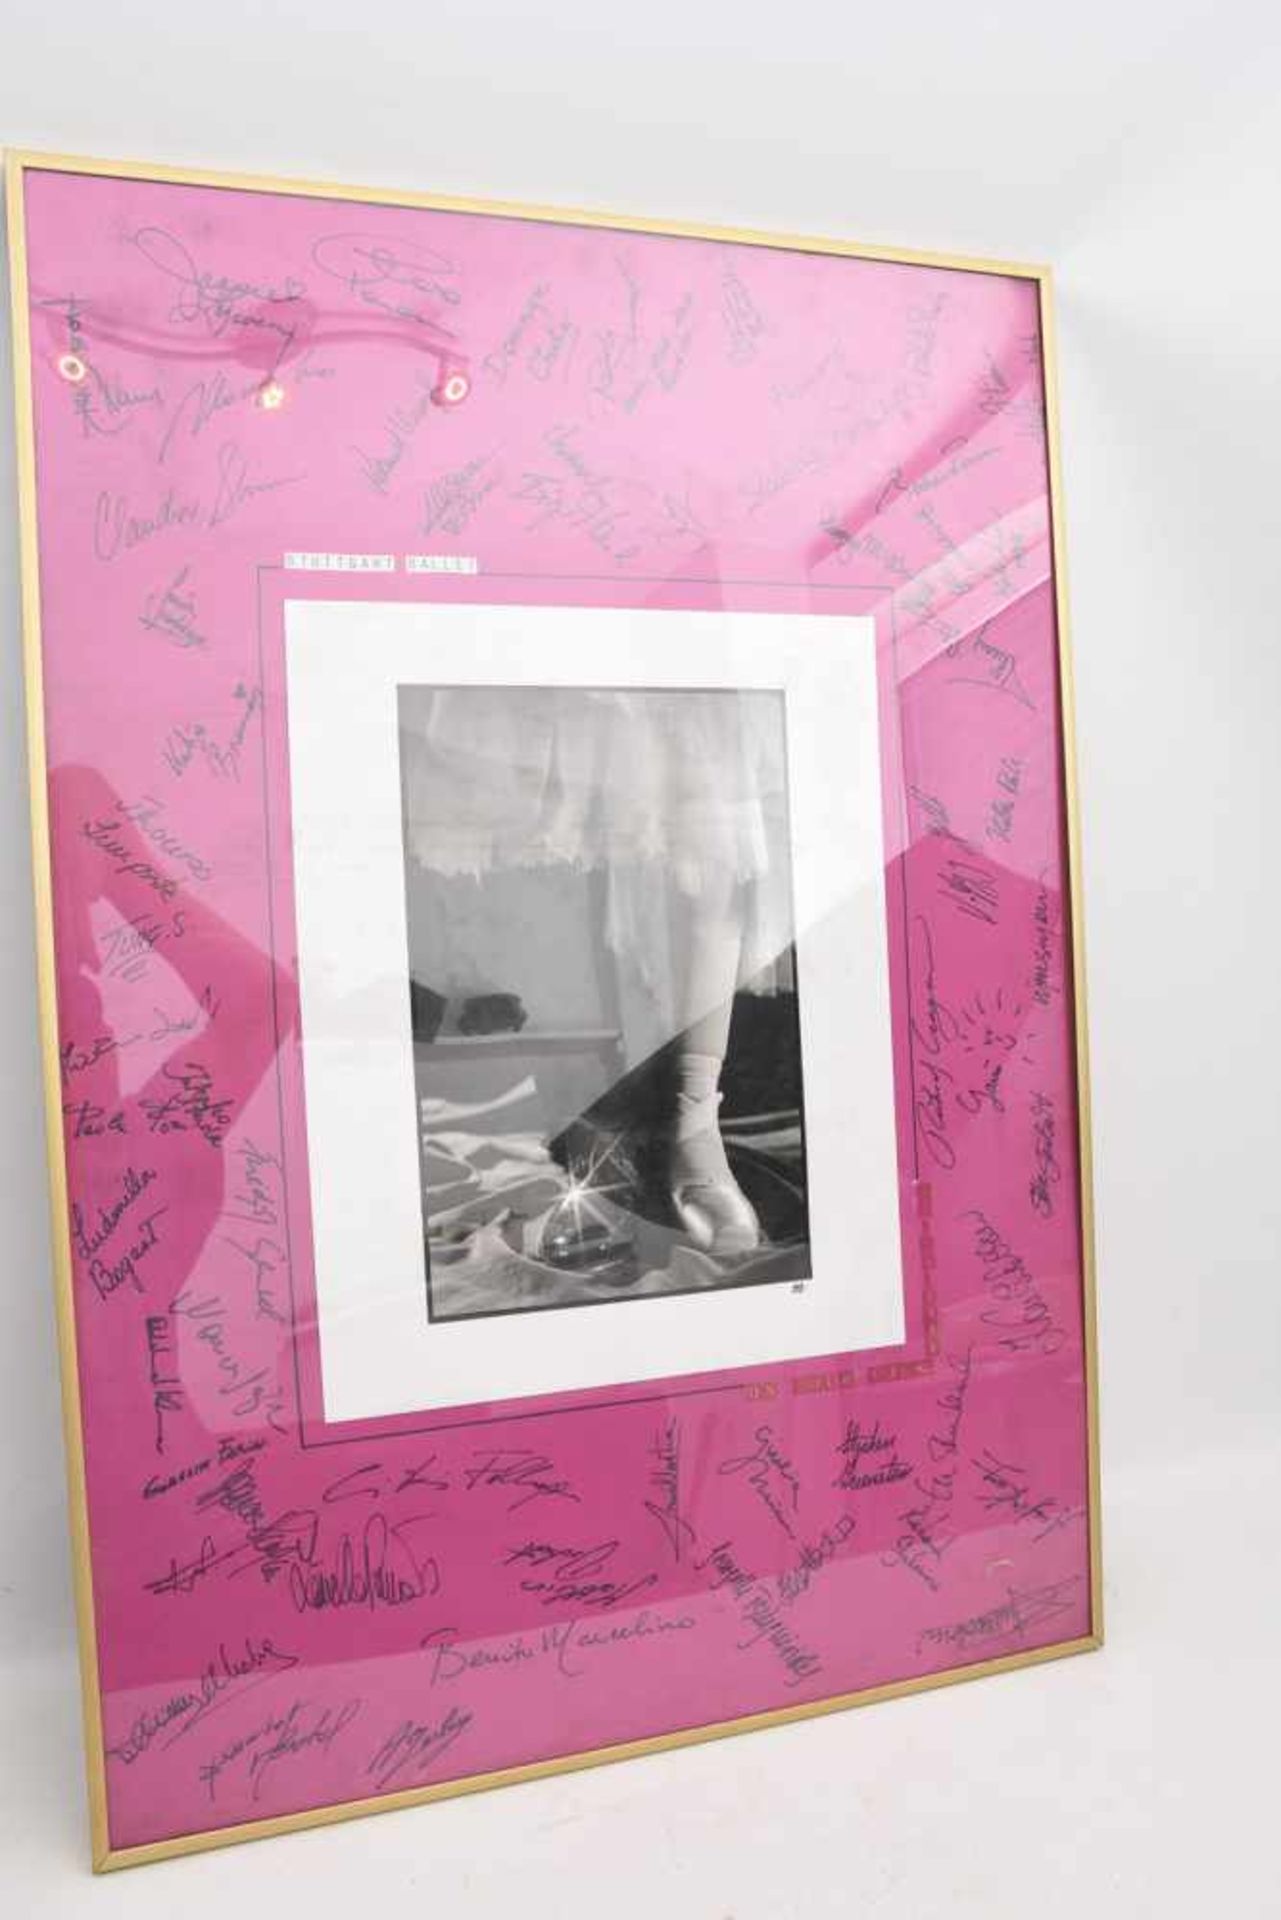 AUTOGRAMM-BILD "STUTTGART BALLET", hinter Glas gerahmt, signiert,1990 Mit zahlreichen Autogrammen - Bild 2 aus 6